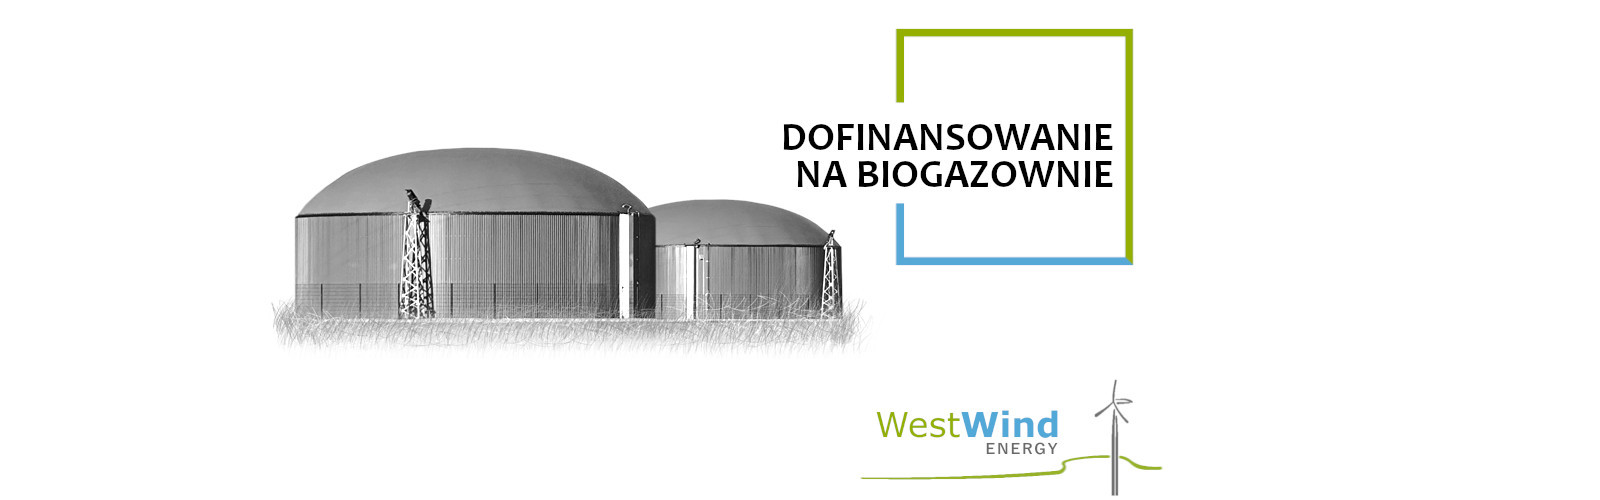 dofinansowanie na biogazownie